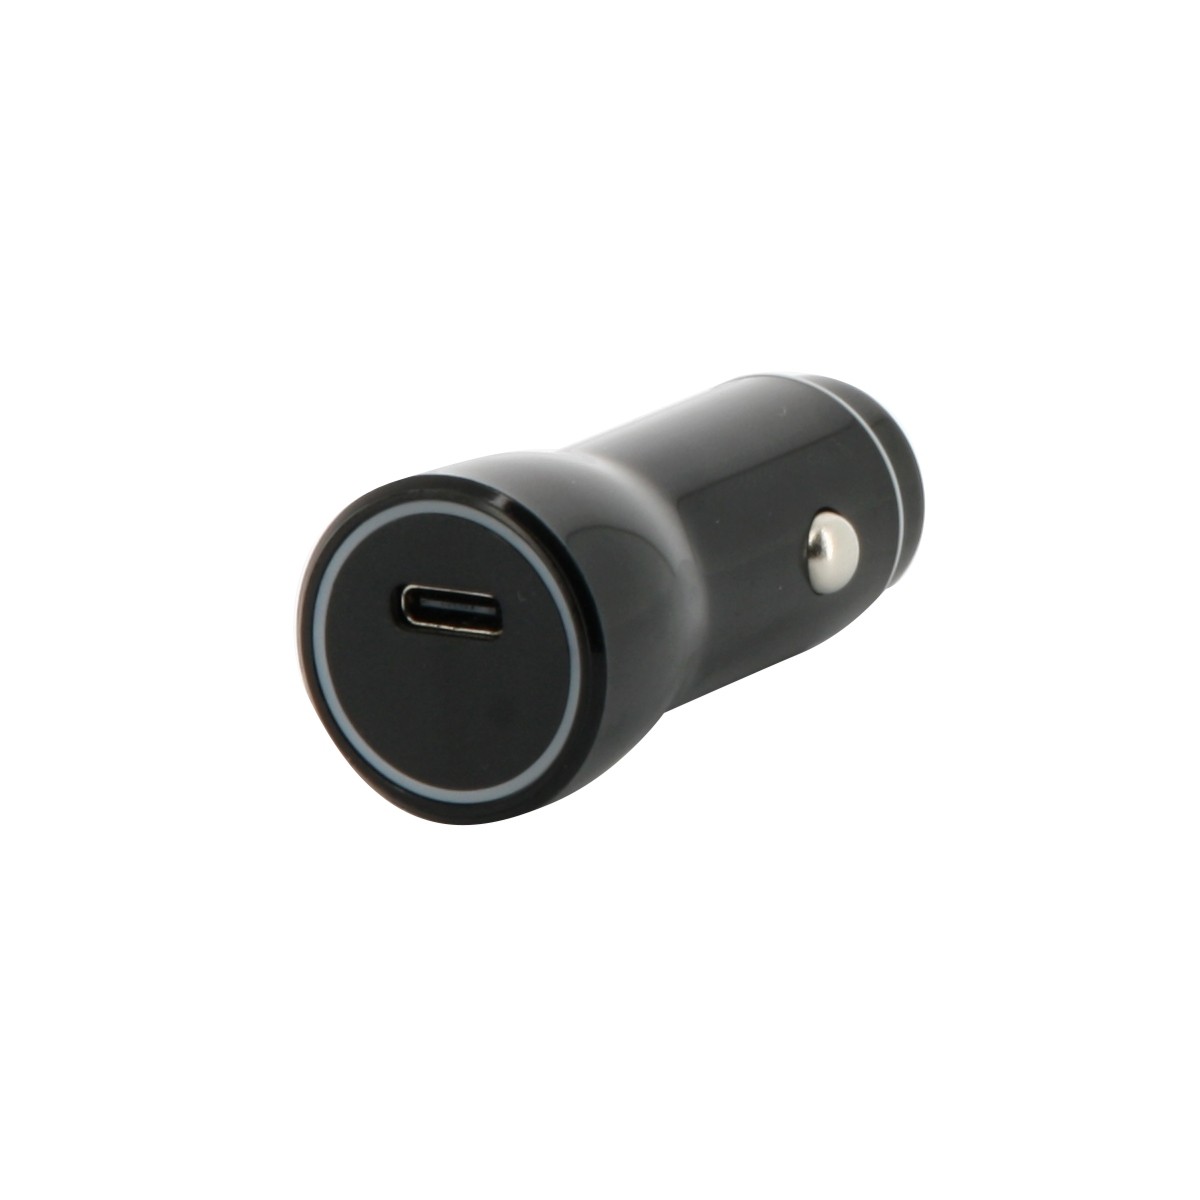 WN-2018 Double chargeur de voyage USB Adaptateur secteur Prise US Plug